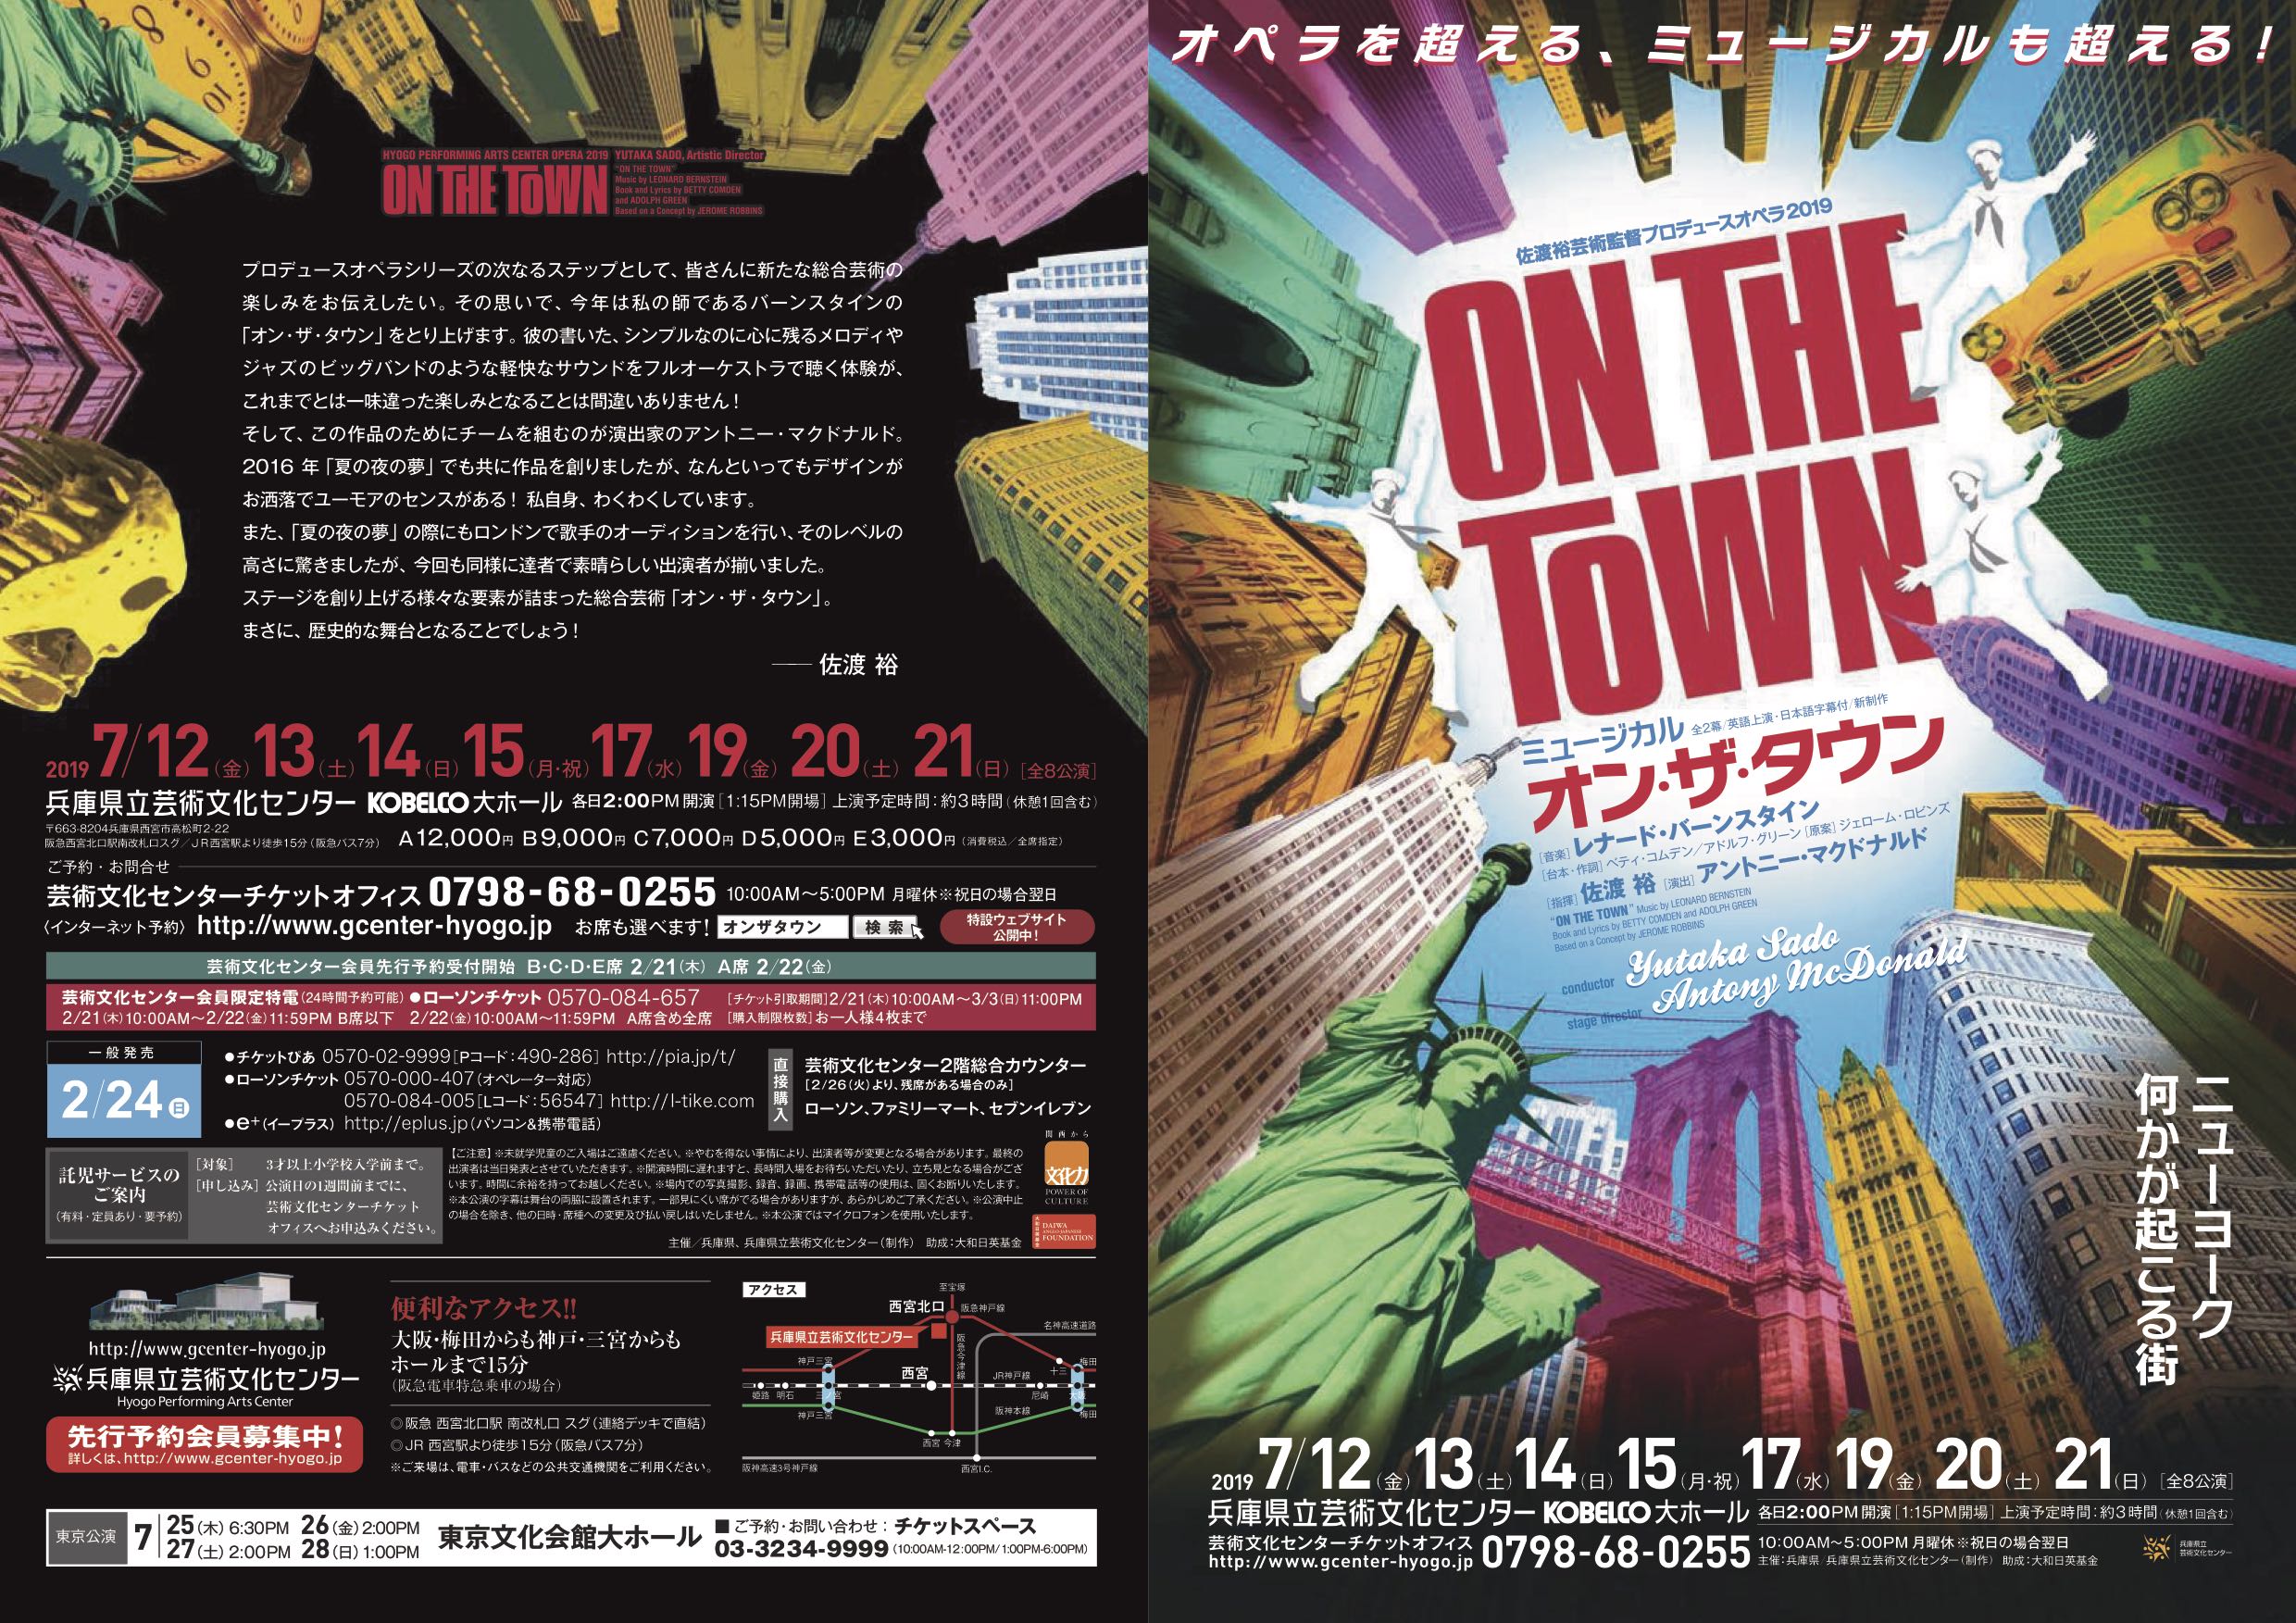 佐渡裕芸術監督プロデュースオペラ2019 「オン・ザ・タウン」